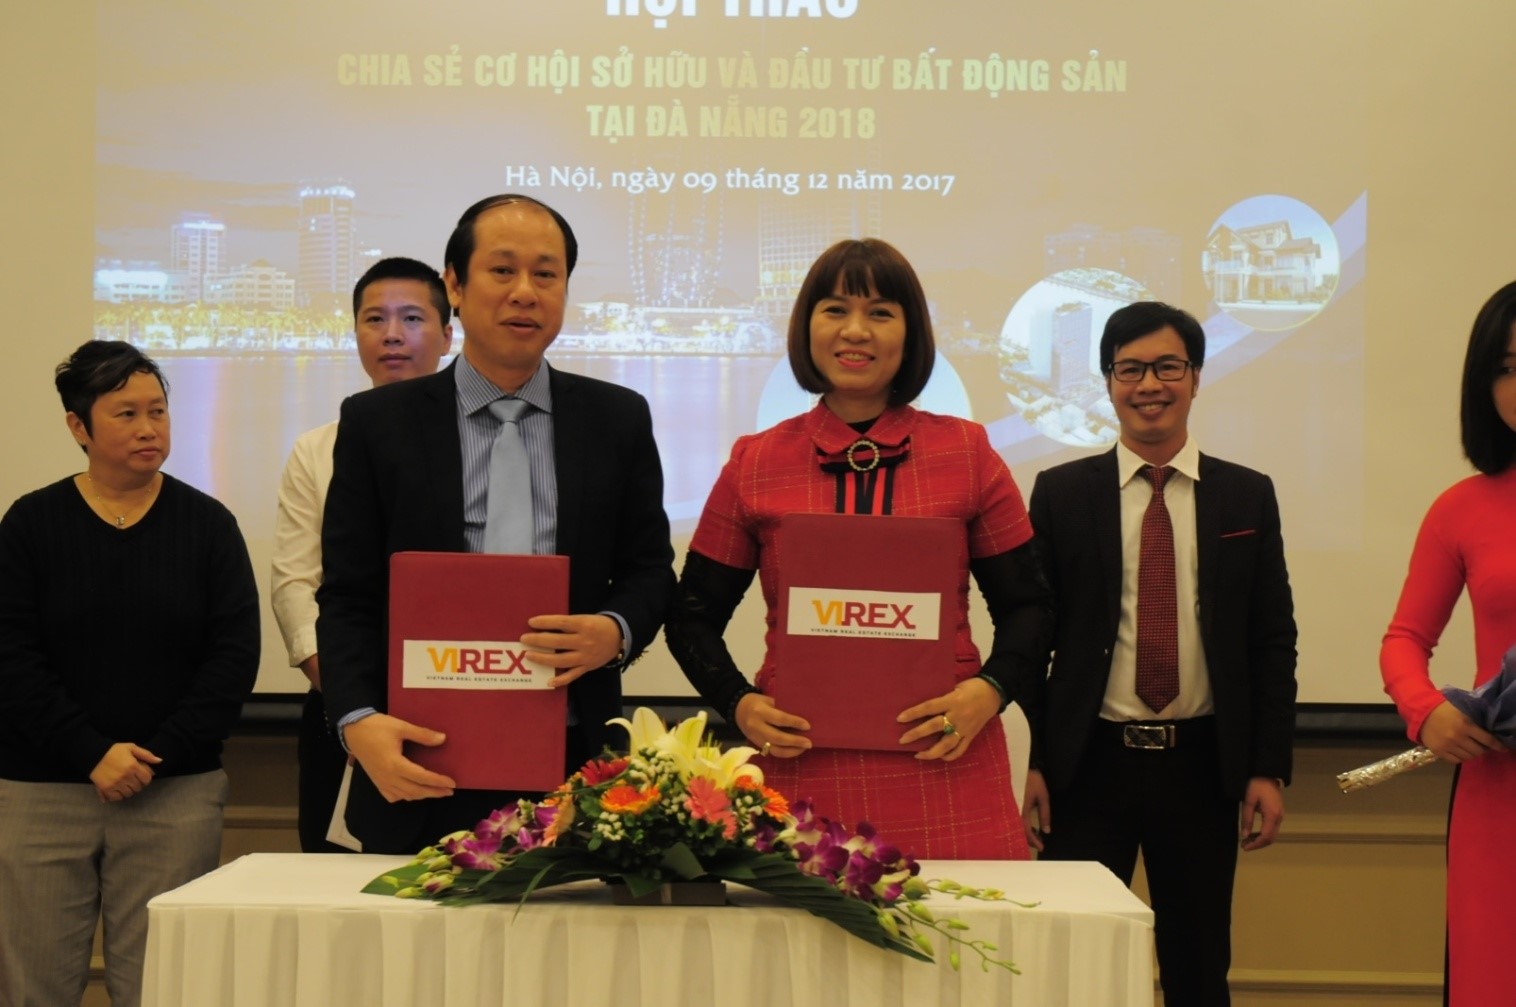 Ký kết thỏa thuận hợp tác giữa bà Lê Thị Lan Anh, Tổng Giám đốc Công ty Virex và ông Nguyễn Minh Tuấn, Phó Chủ tịch CLB Bất động sản Hà Nội/ Hiệp hội BĐS Việt Nam, Chủ tịch HĐQT Vietbuilding.